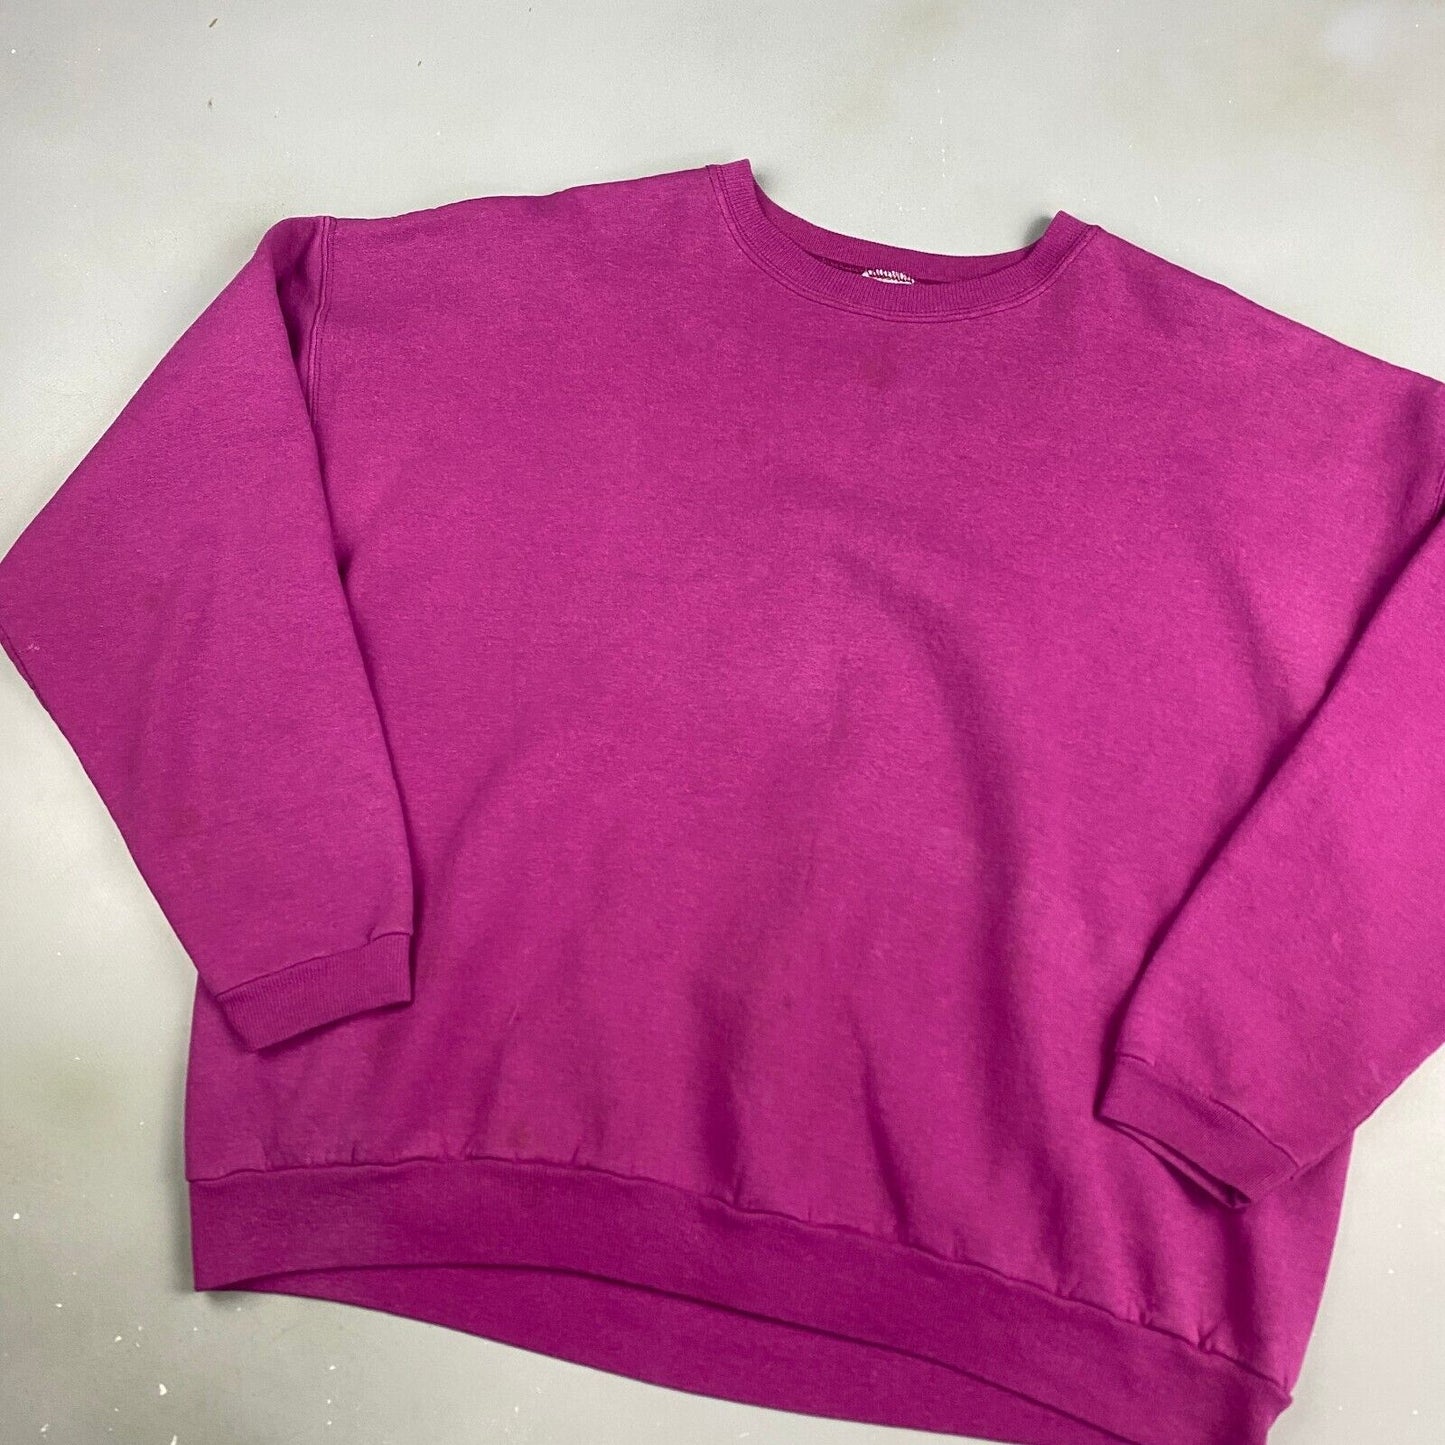 VINTAGE 90s Hanes Blank Purple Crewneck Sweater sz Large Adult